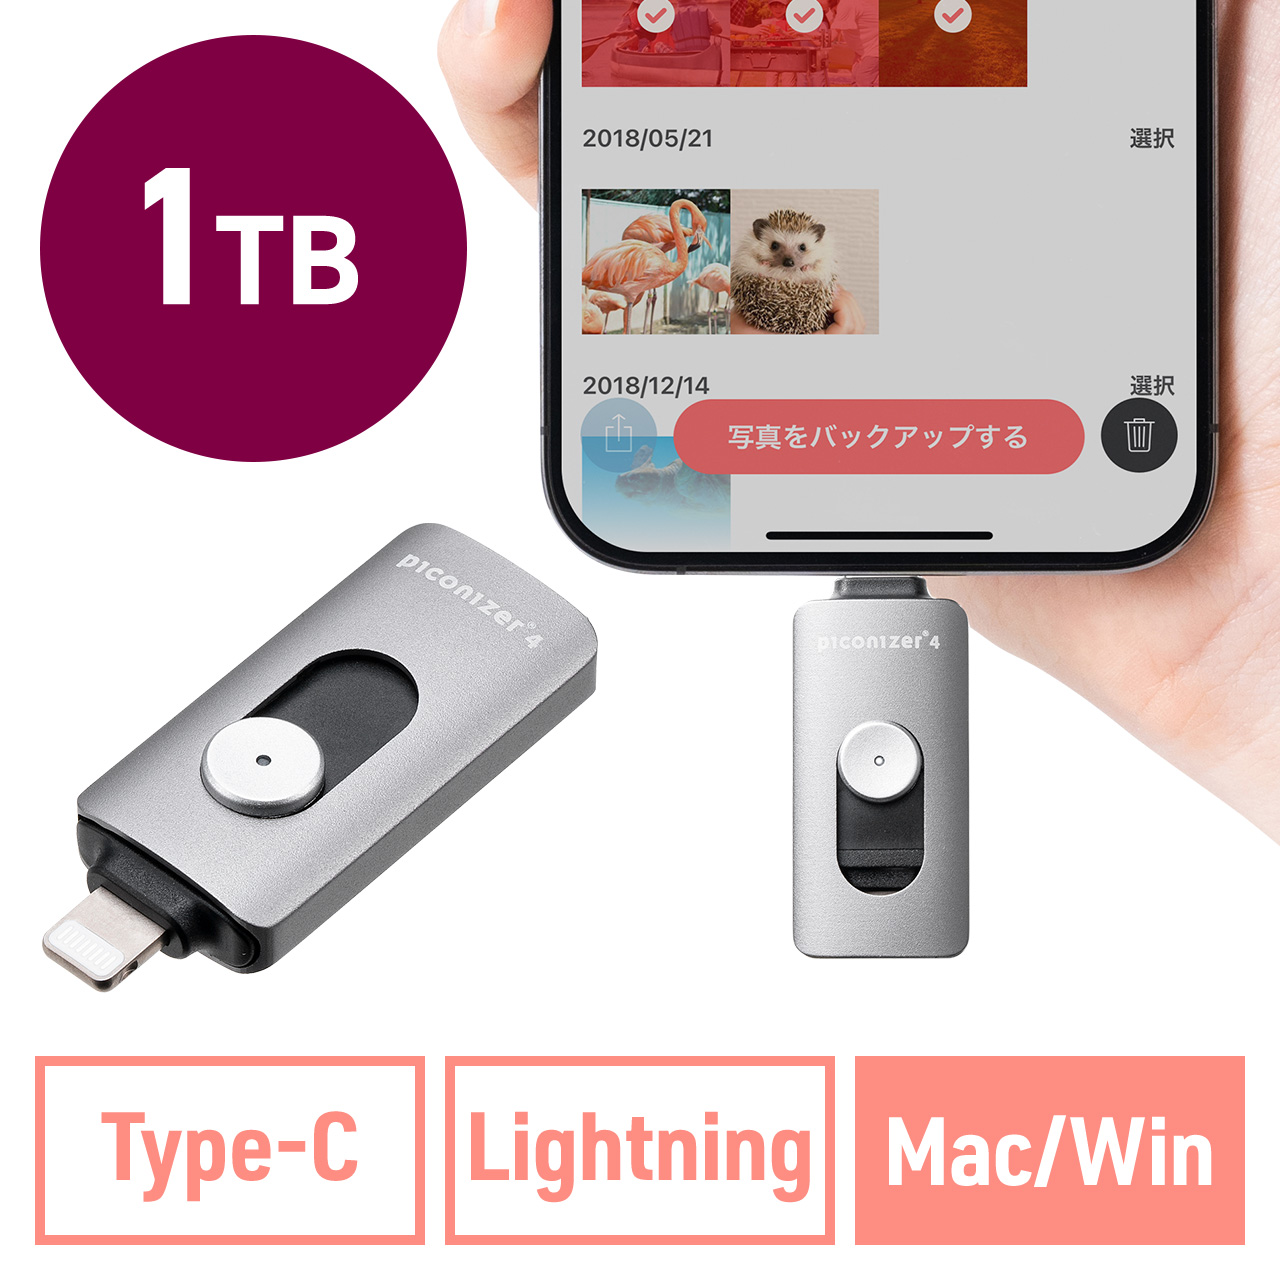 Lightning/Type-C USBメモリ 1TB グレー iPhone Android 対応 MFi認証